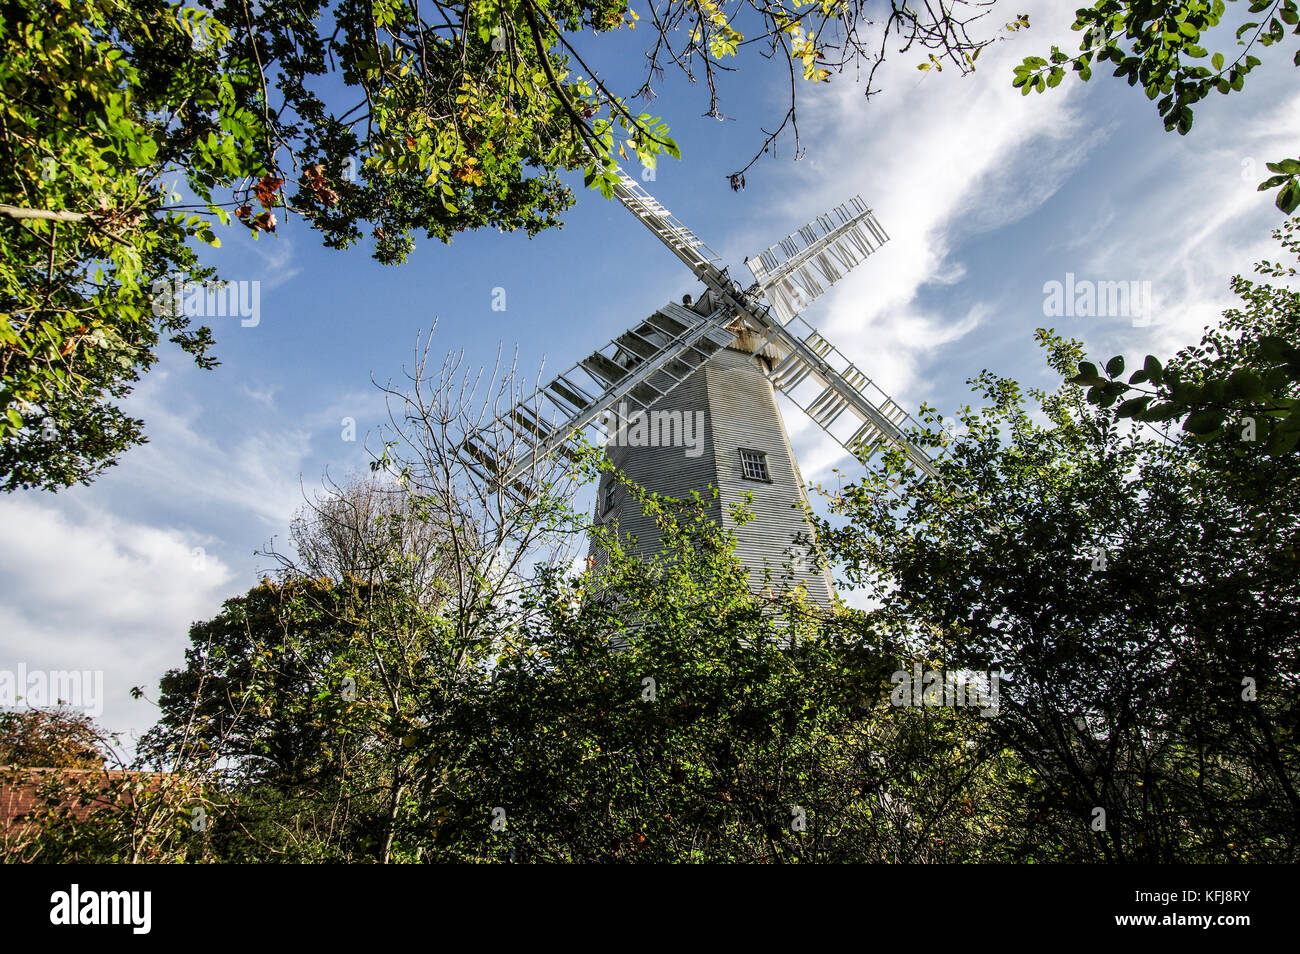 King's Mill ou Vincent's Mill dans la région de Shipley - West Sussex, Angleterre Banque D'Images